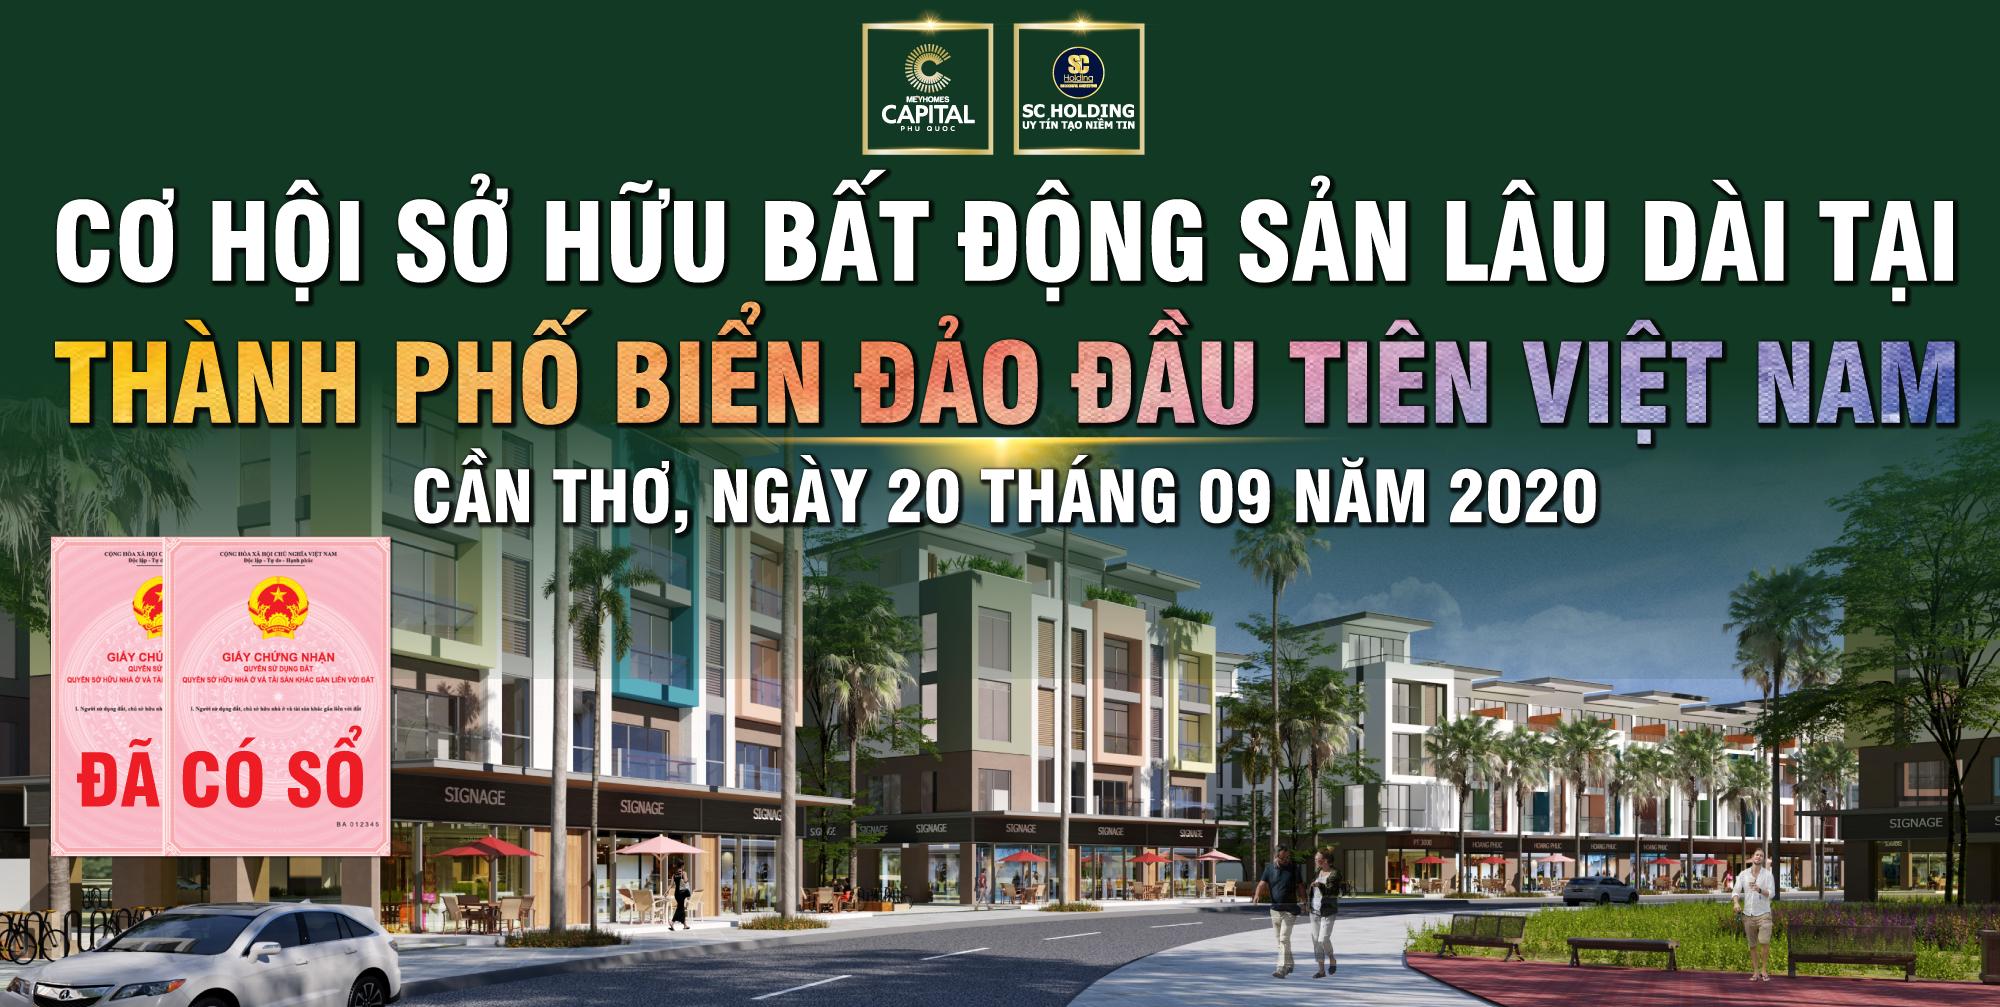 Meyhomes Capital Phú Quốc tung chính sách bán hàng hấp dẫn tháng 09/2020